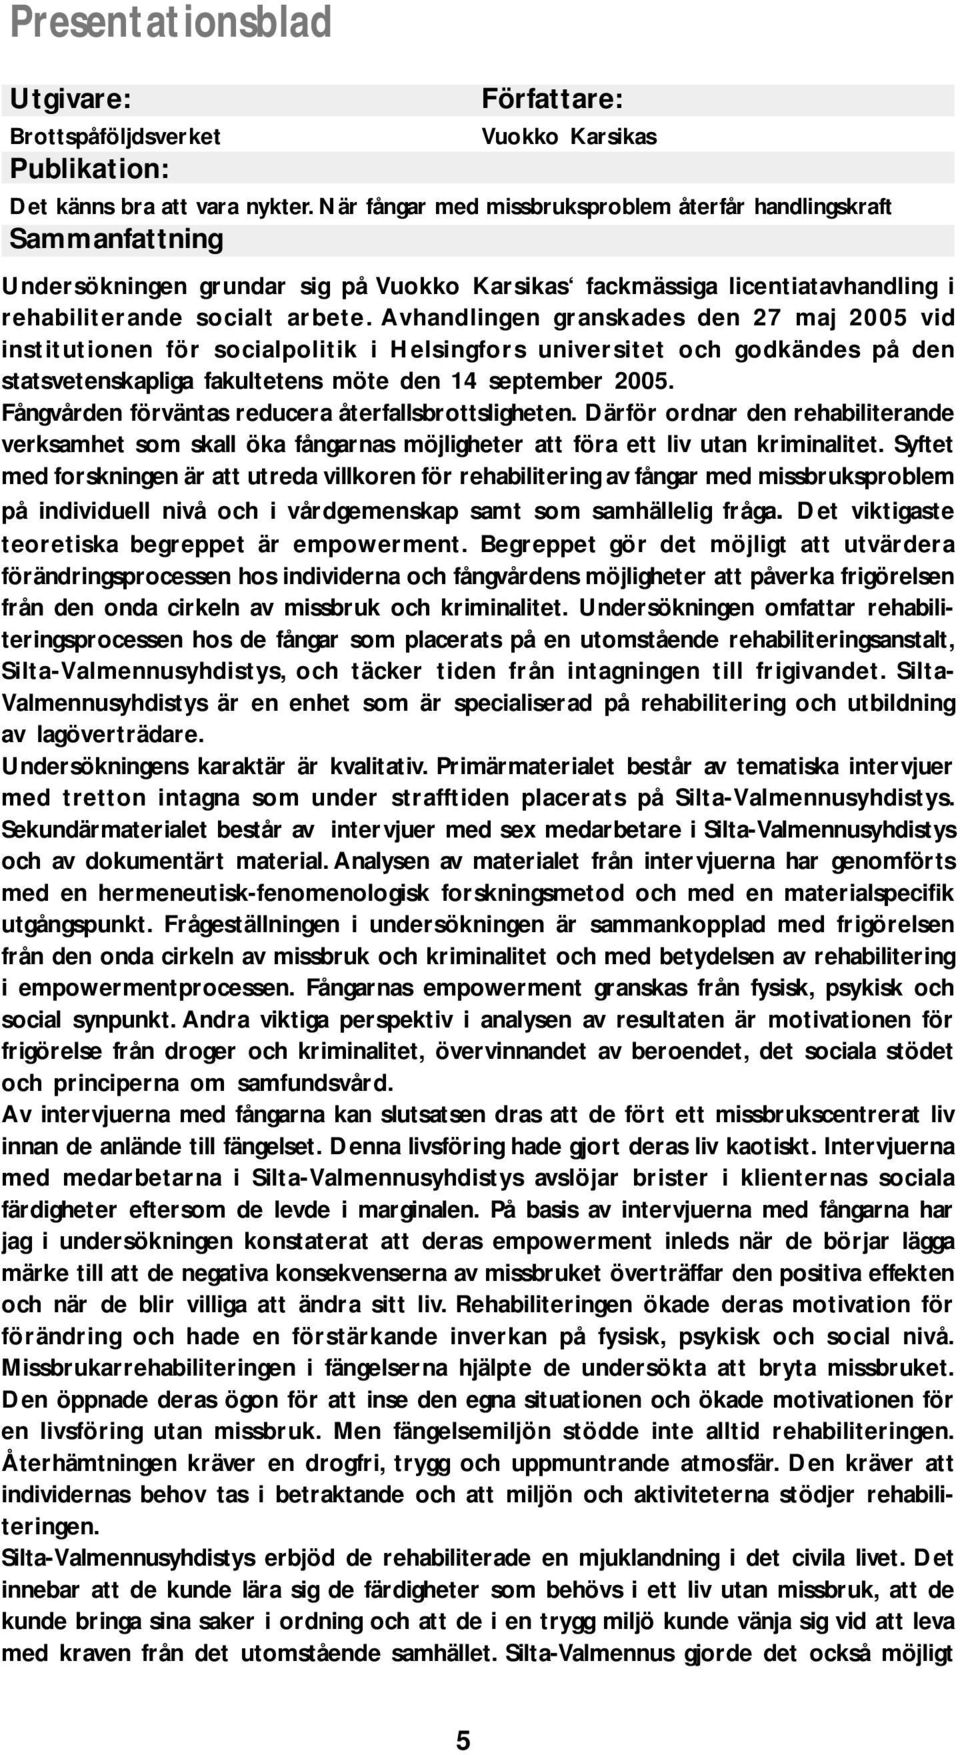 Avhandlingen granskades den 27 maj 2005 vid institutionen för socialpolitik i Helsingfors universitet och godkändes på den statsvetenskapliga fakultetens möte den 14 september 2005.